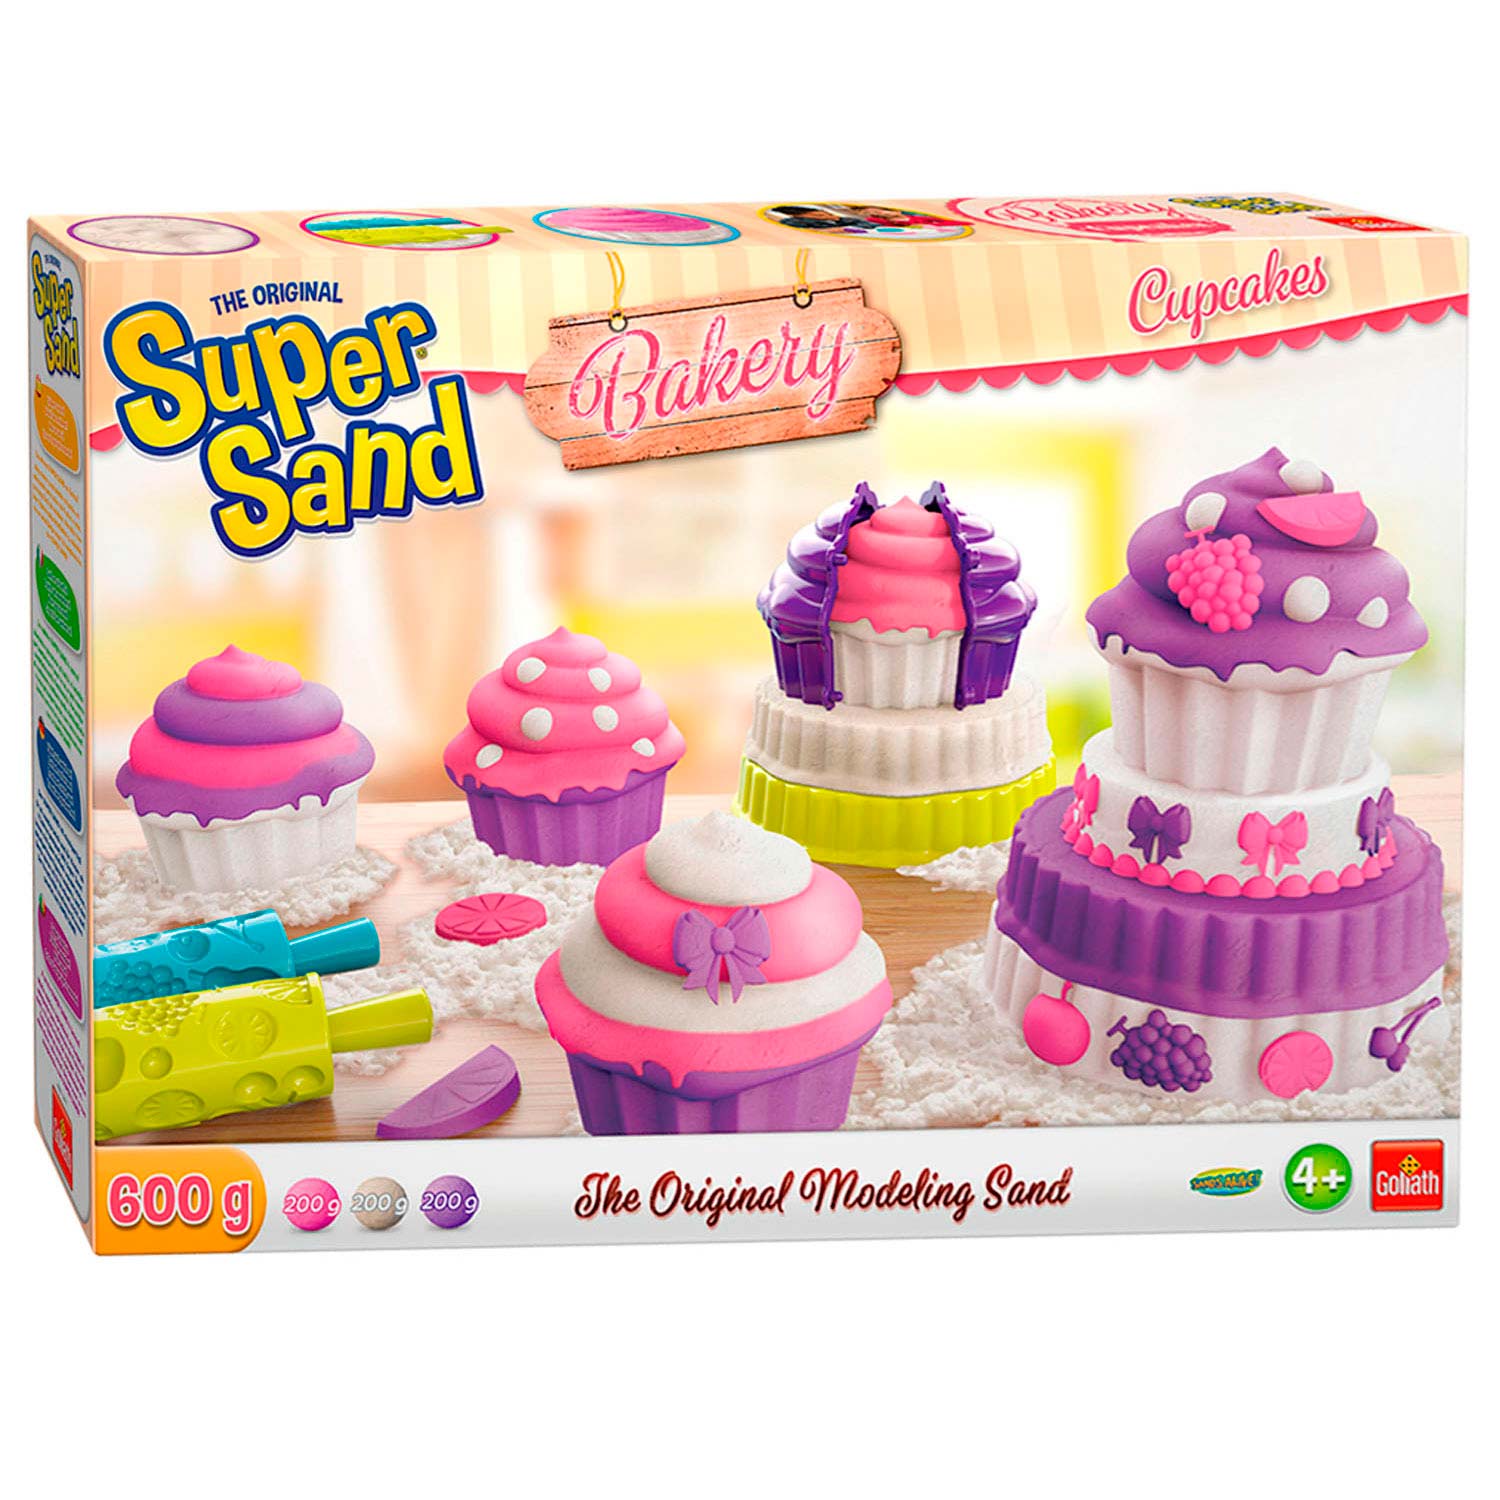 Super Sand Cupcakes online kopen? |